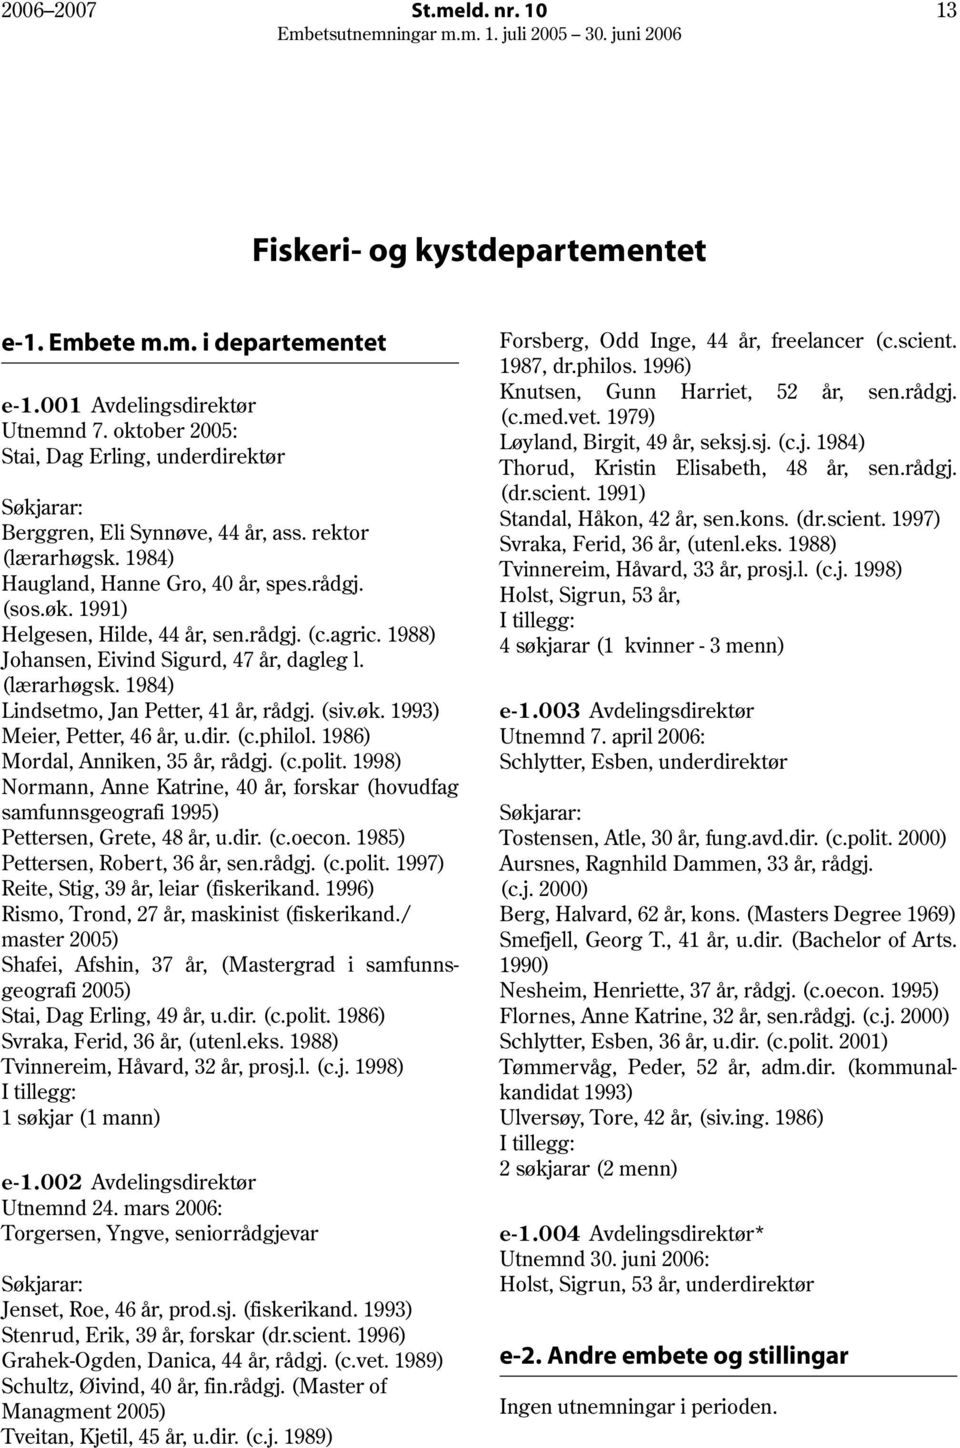 agric. 1988) Johansen, Eivind Sigurd, 47 år, dagleg l. (lærarhøgsk. 1984) Lindsetmo, Jan Petter, 41 år, rådgj. (siv.øk. 1993) Meier, Petter, 46 år, u.dir. (c.philol.